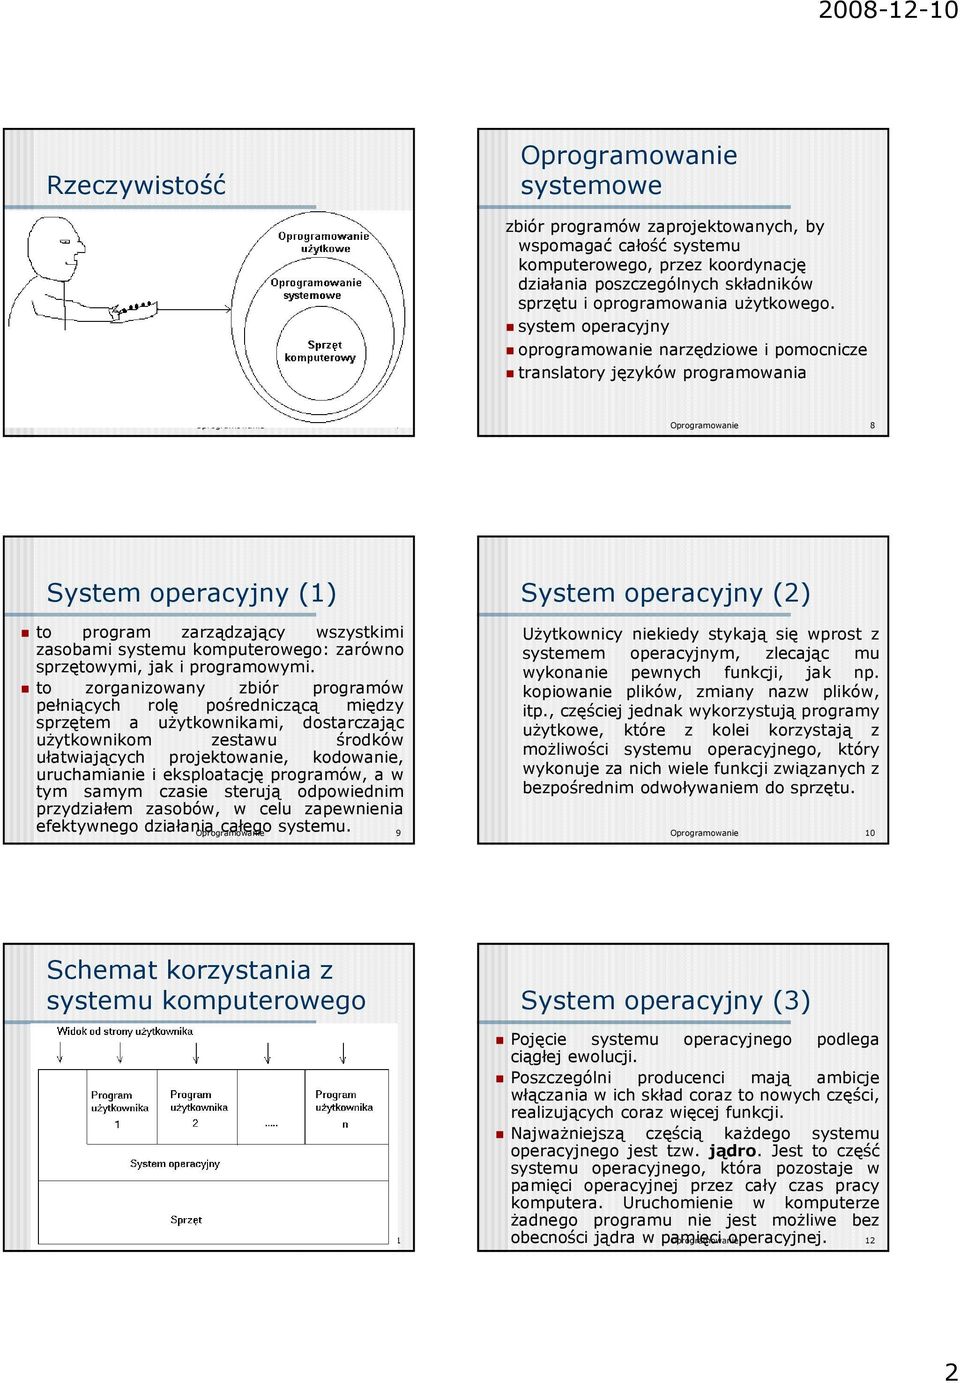 system operacyjny oprogramowanie narzędziowe i pomocnicze translatory języków programowania Oprogramowanie 7 Oprogramowanie 8 System operacyjny (1) to program zarządzający wszystkimi zasobami systemu